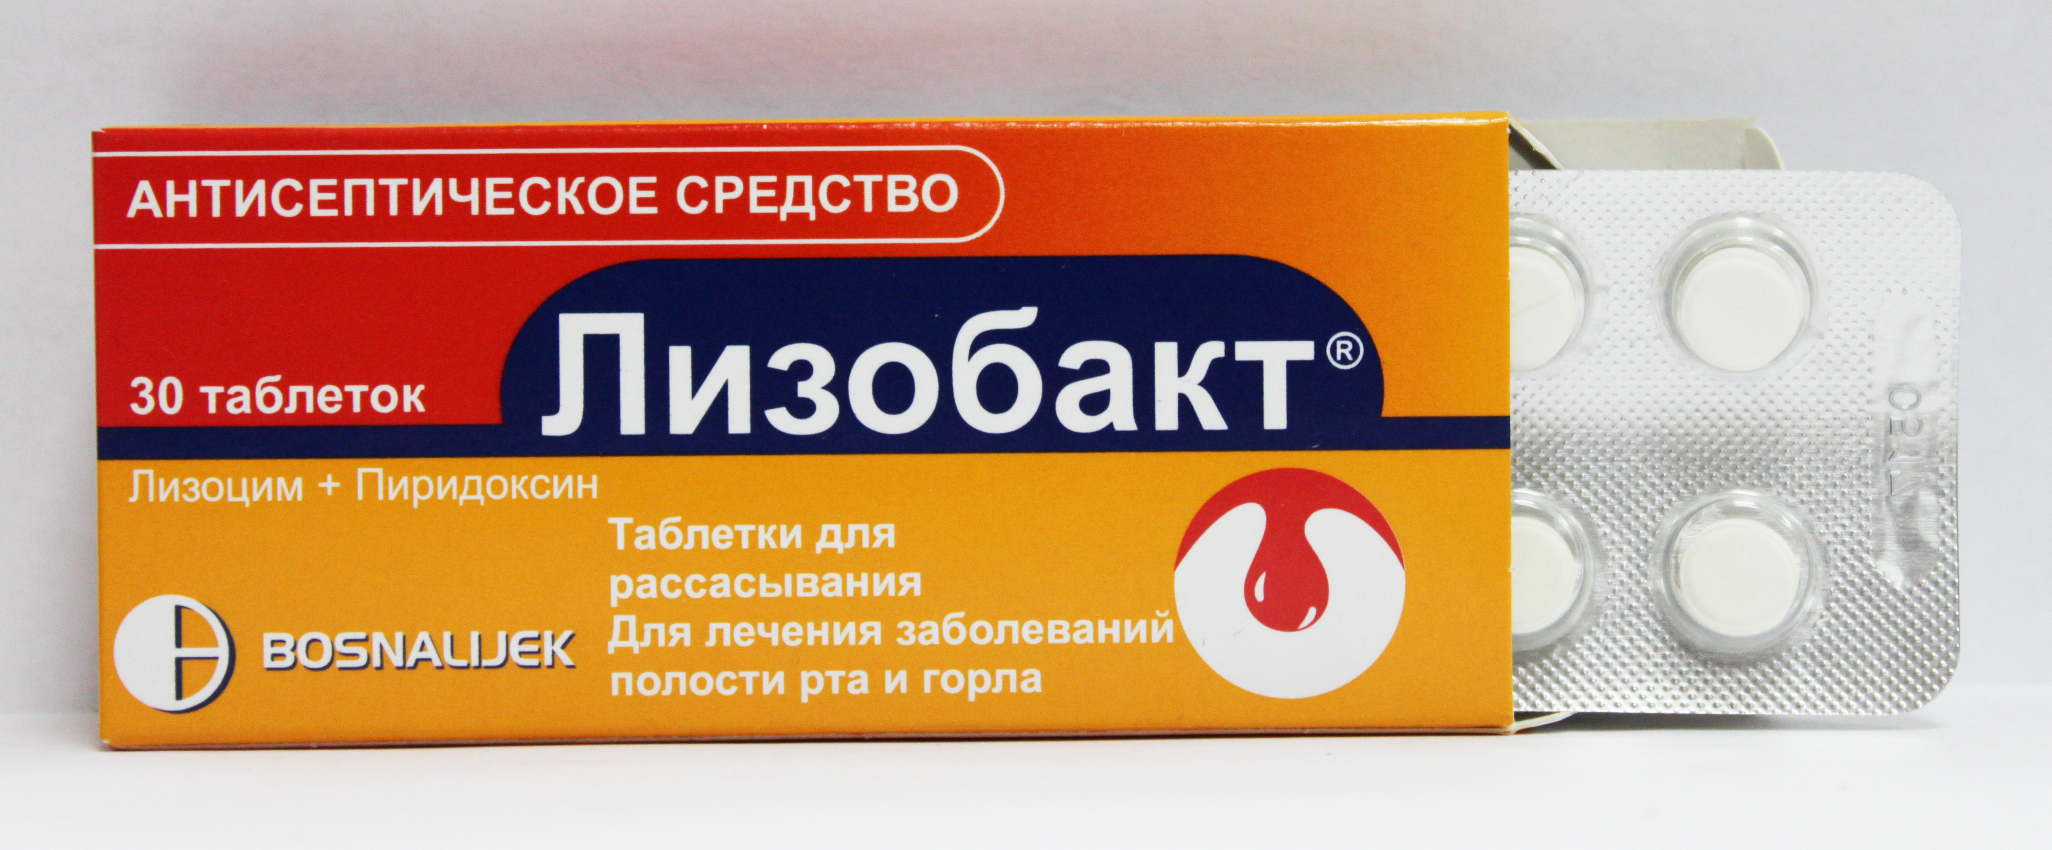 Таблетки от горла: недорогие, но эффективные | Сабина - женский сайт .